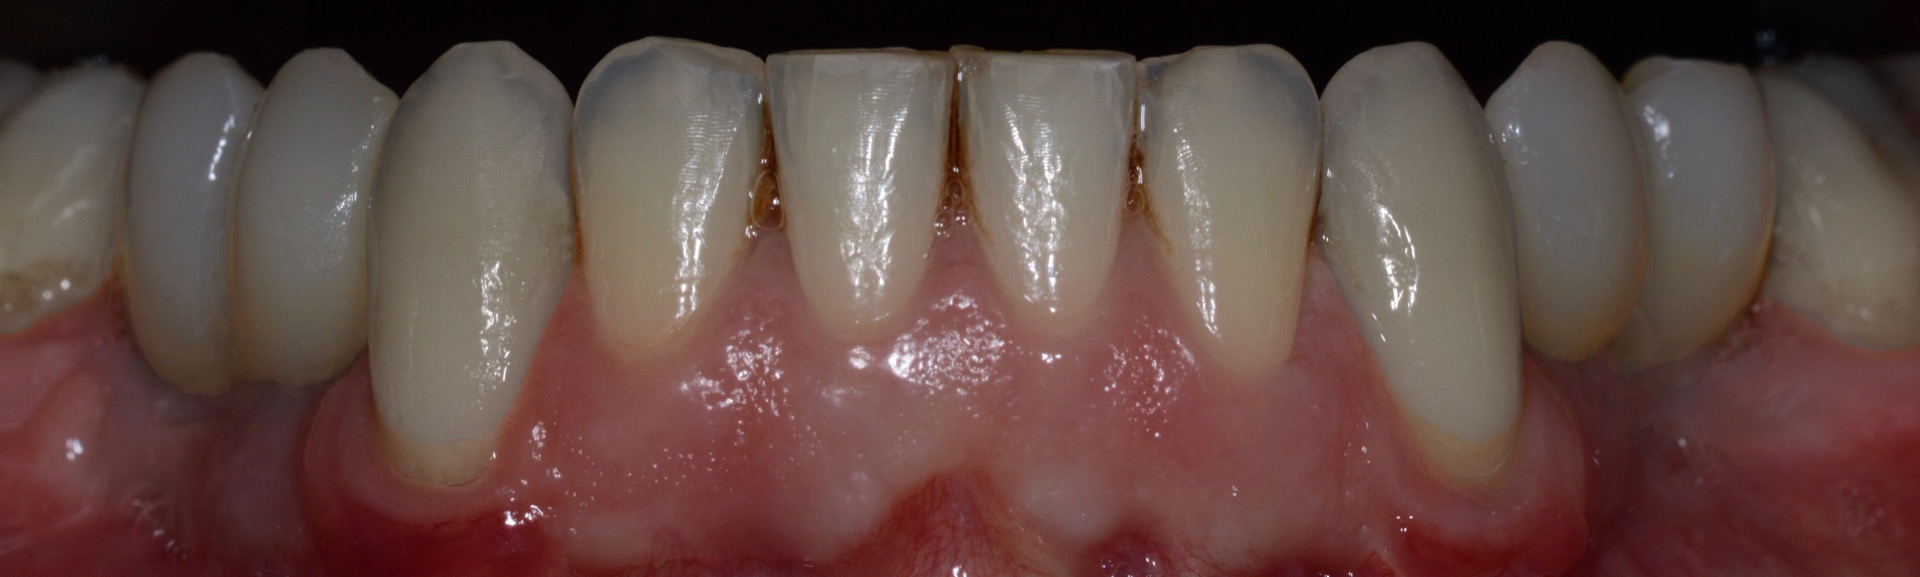 Τελική κατάσταση - Πρόσθια άποψη των αποκαταστάσεων της κάτω γνάθου, τοποθετημένες στο στόμα.